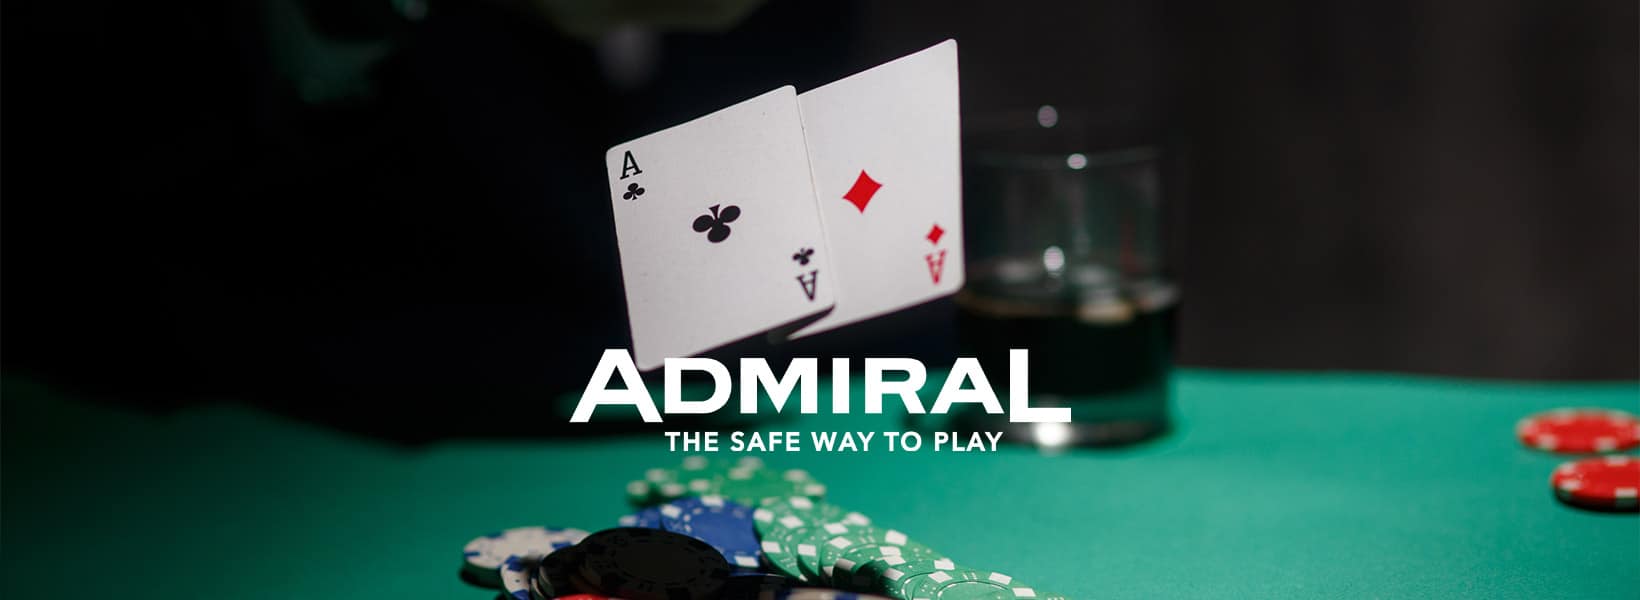 admiral poker gratis